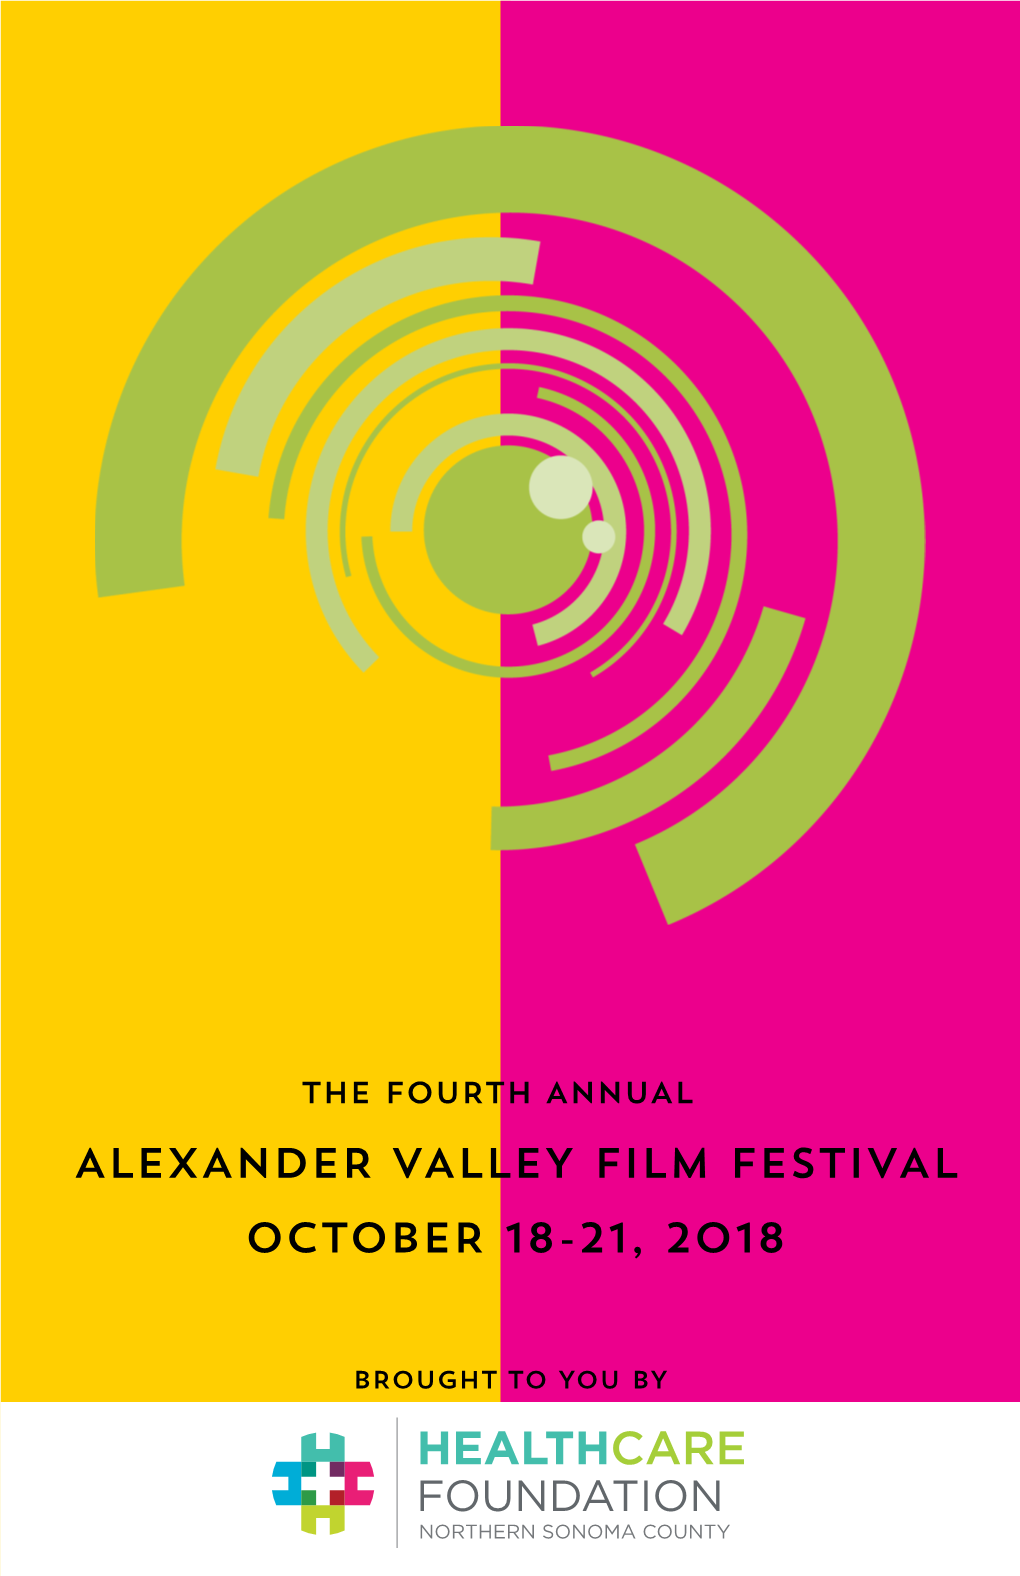 Alexander Valley Film Festival October 18-21, 2018